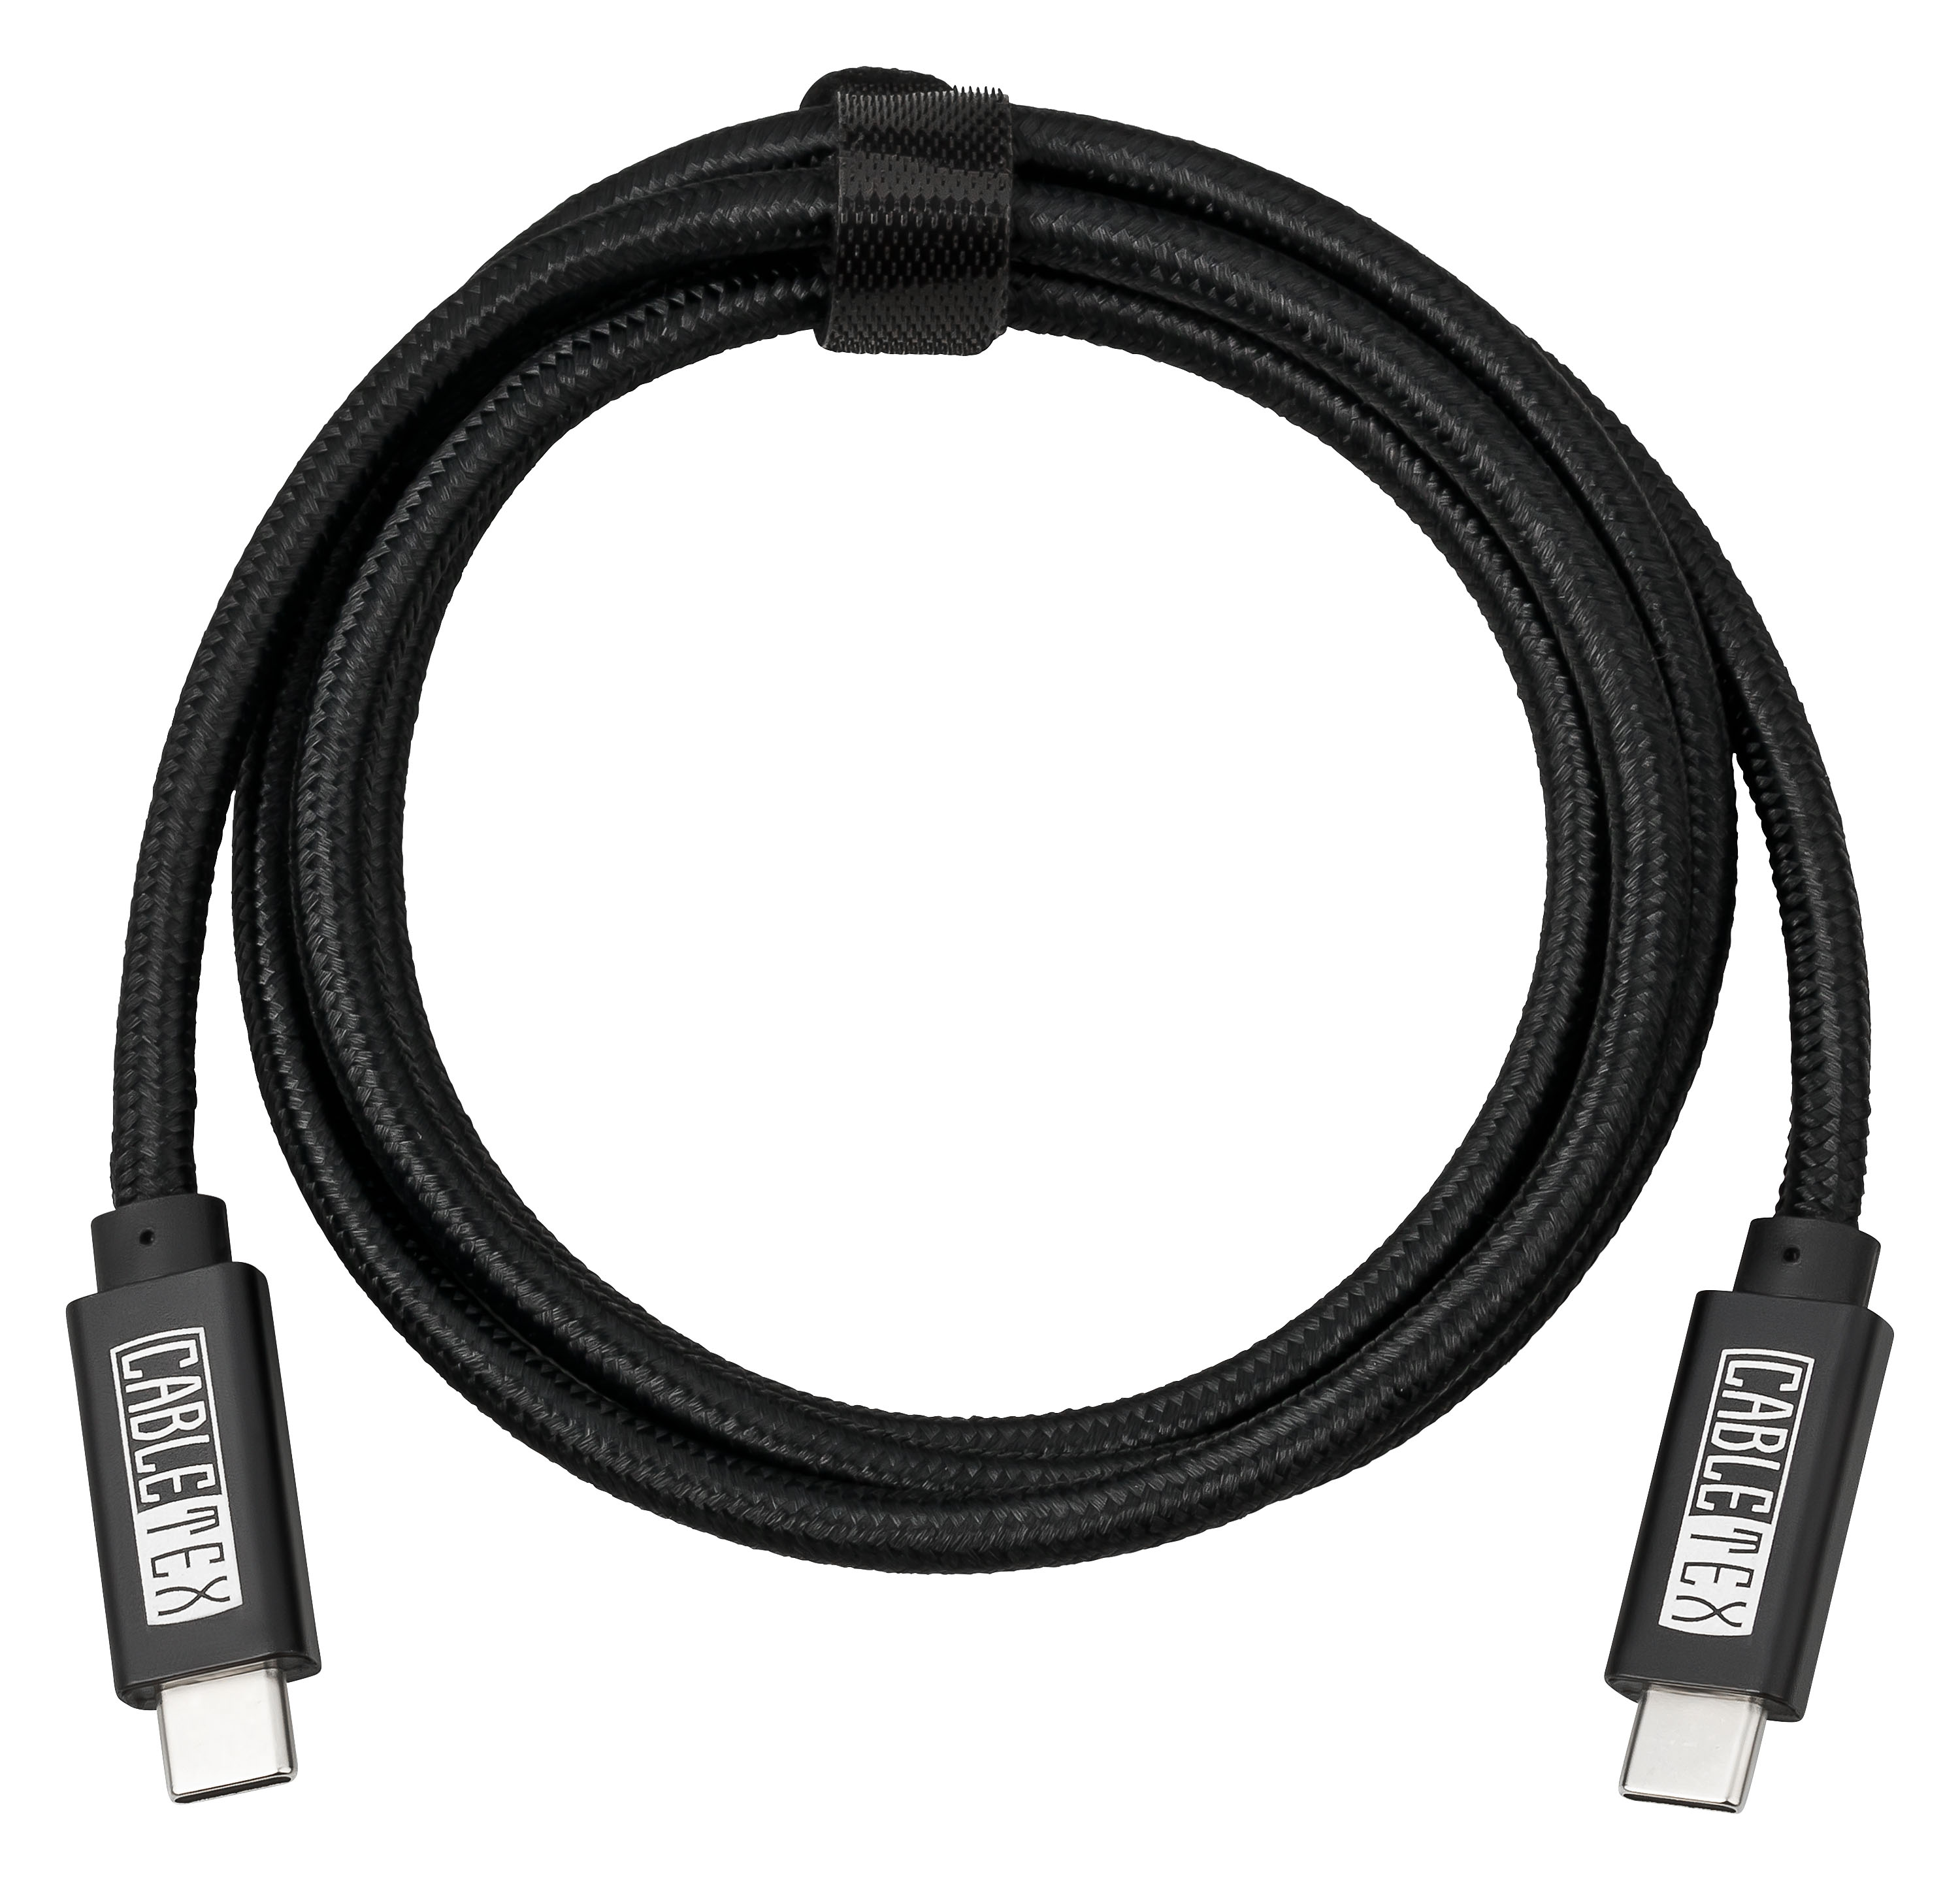 CABLETEX USB-C Kabel | 3m Kabel, Schwarz Länge Ladekabel | USB 100W